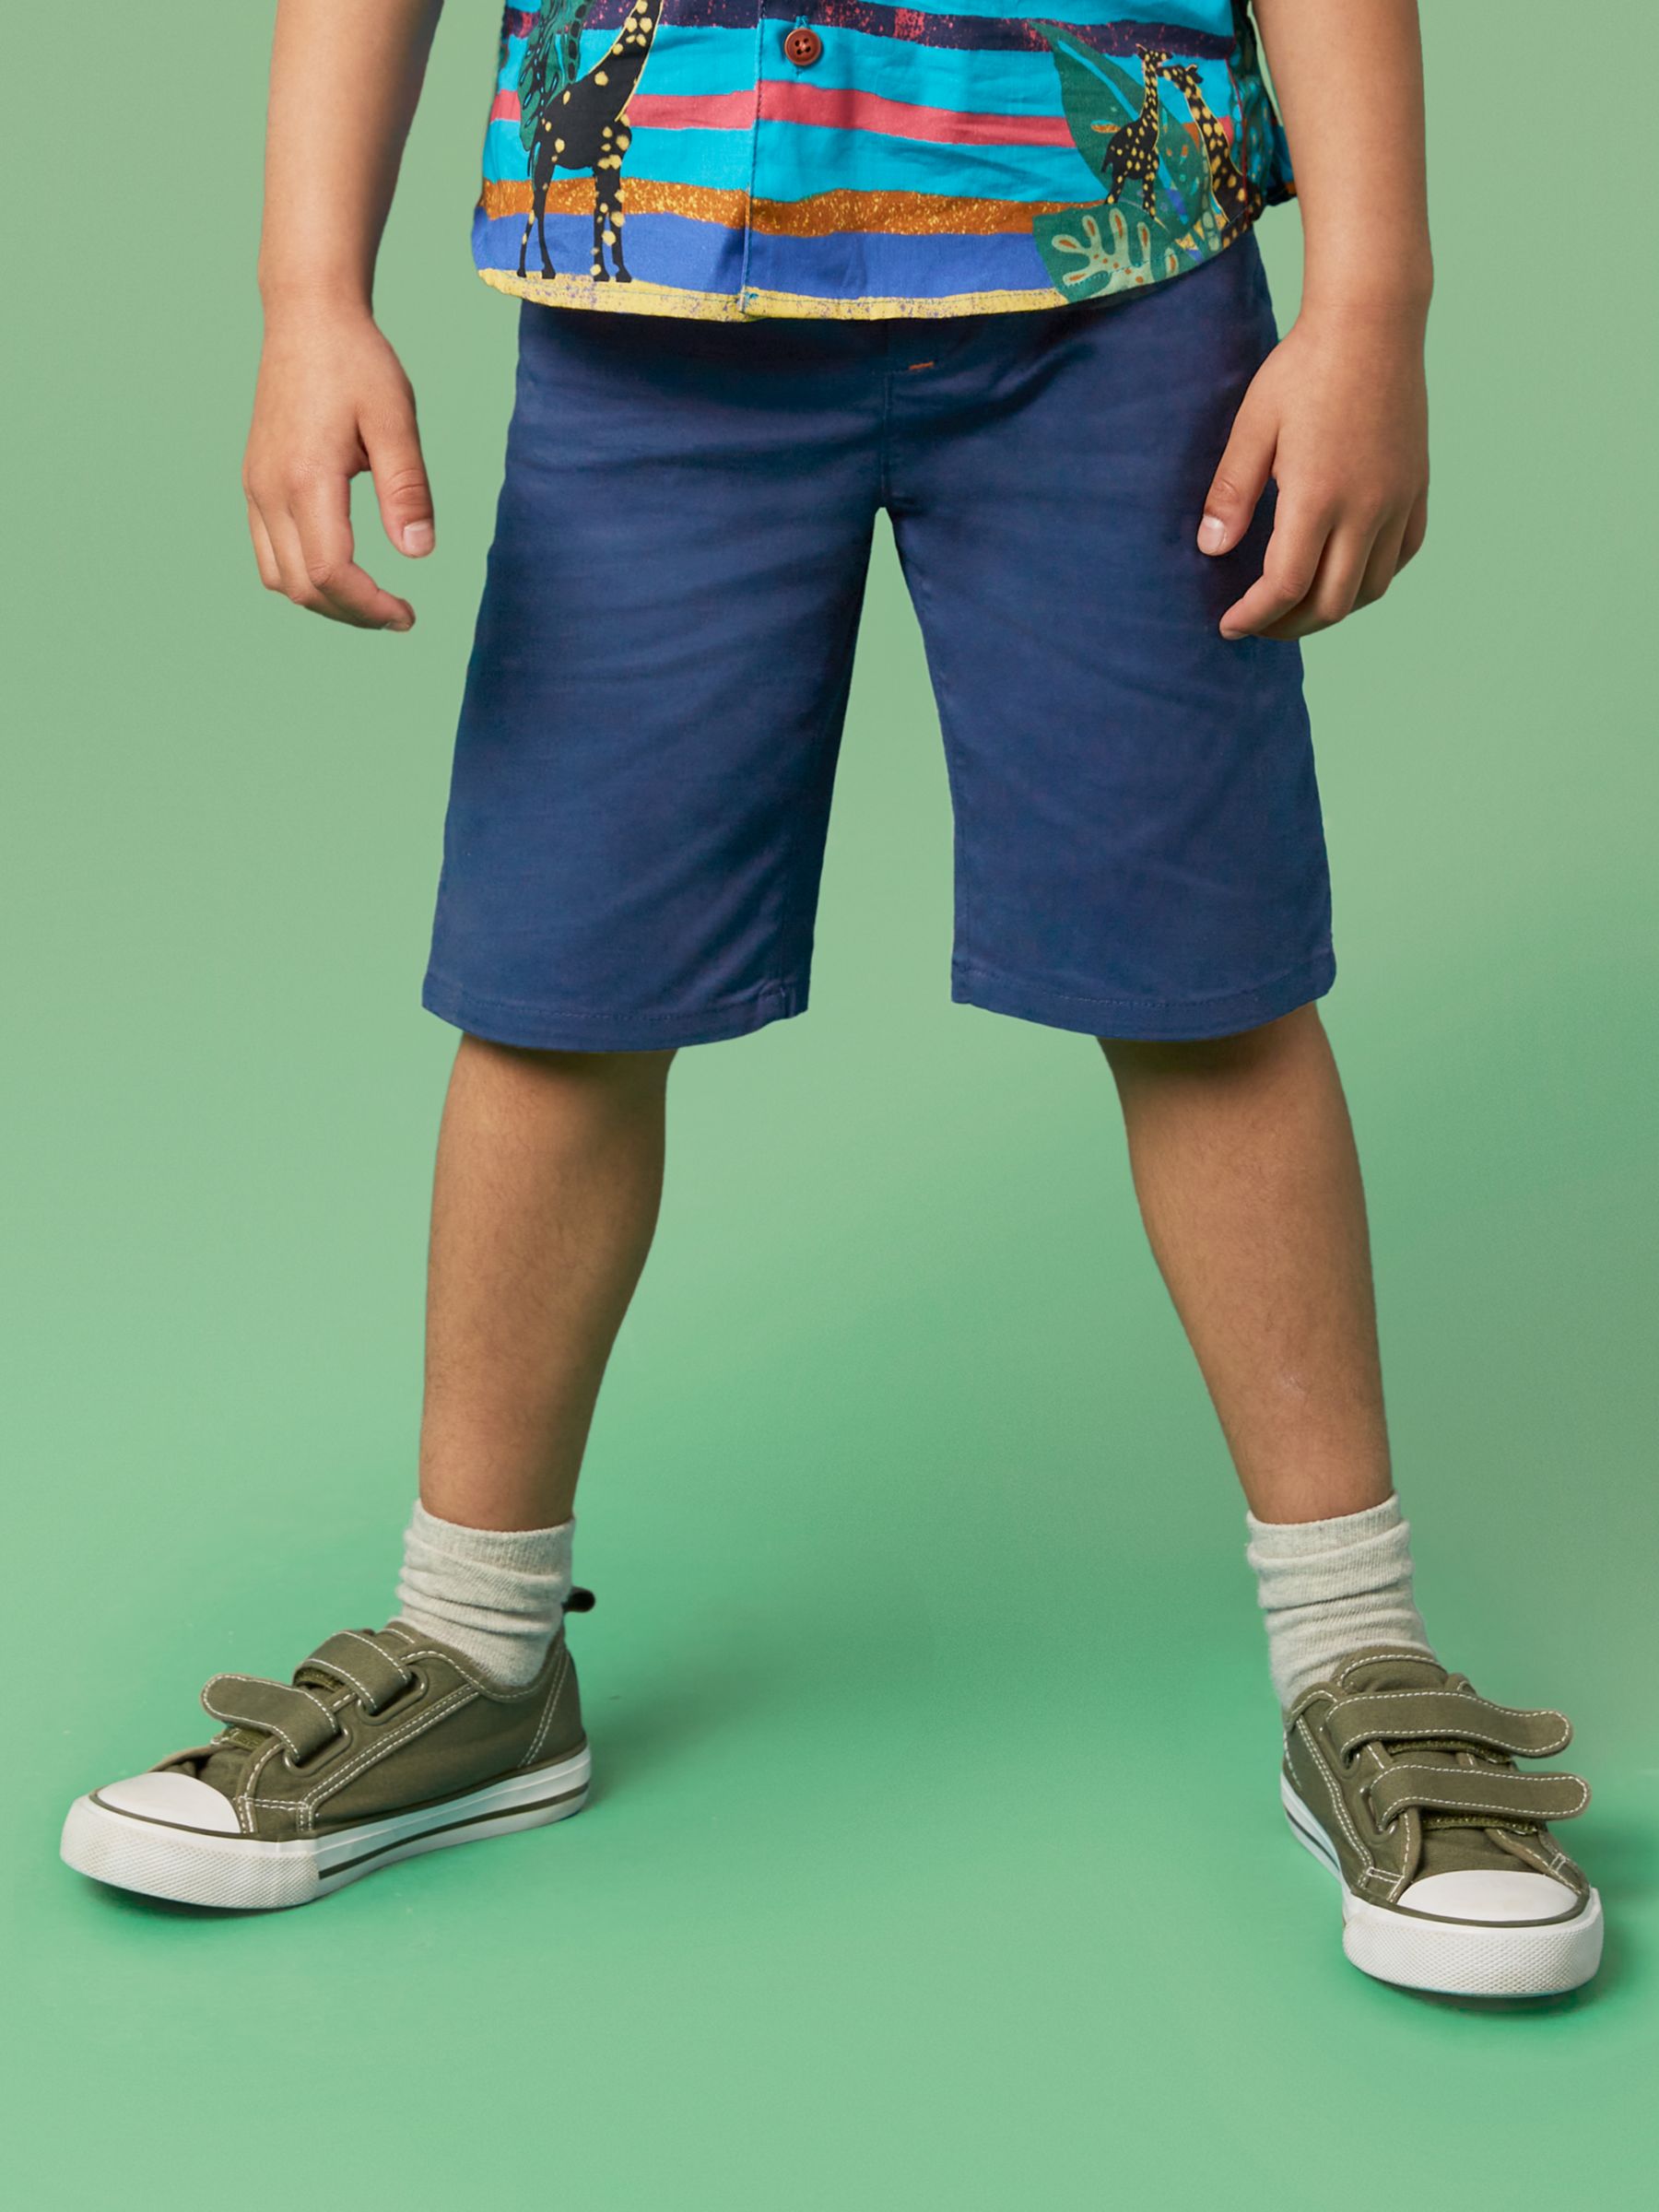 White Stuff Kids' Cole Chino Shorts, Dark Navy, 3-4 years